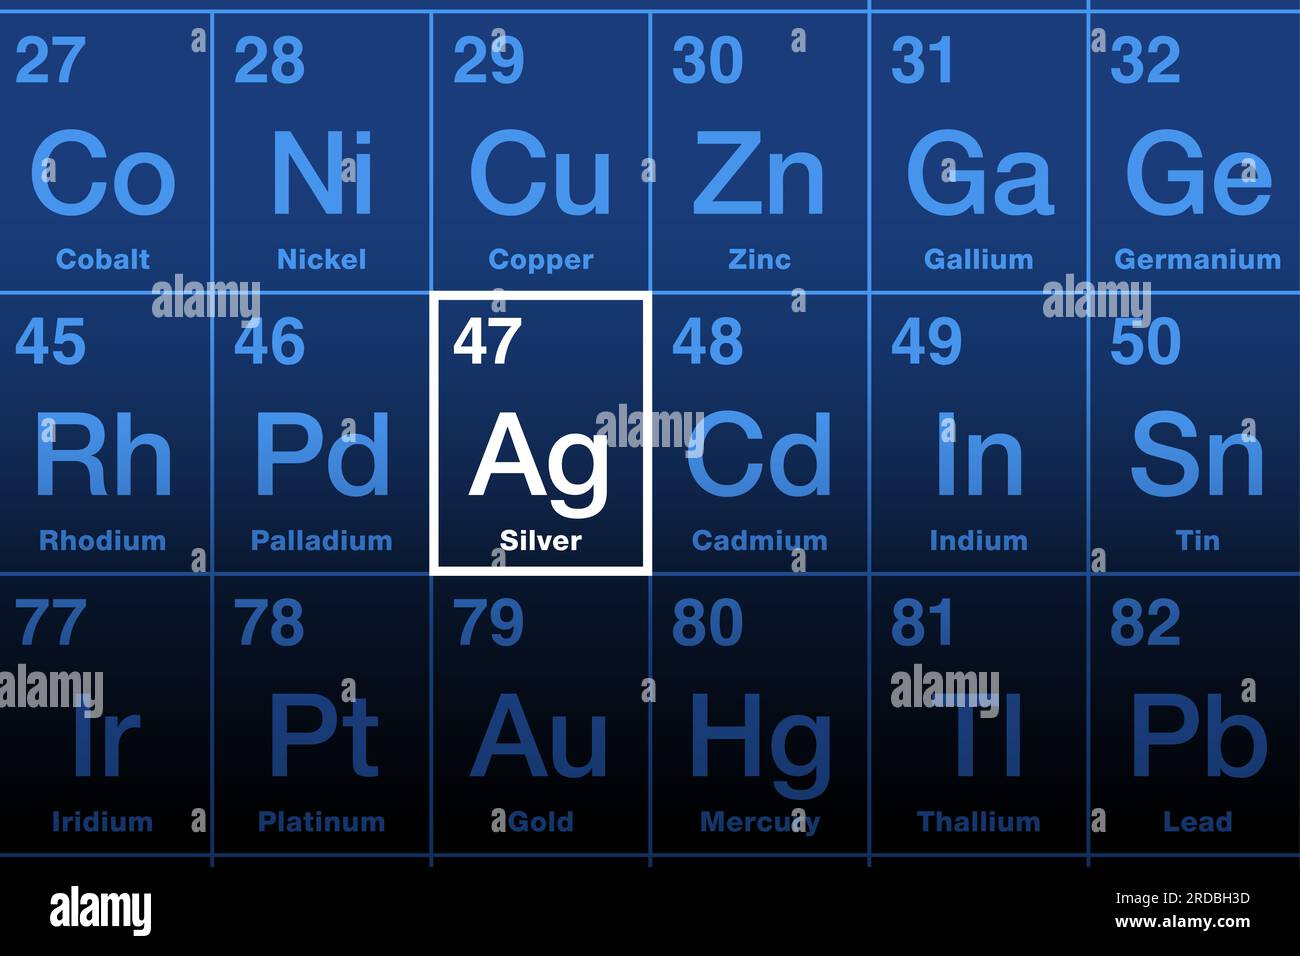 Silber auf Periodensystem der Elemente. Edelmetall mit chemischem Symbol AG (lateinisches Argentum) und Atomzahl 47. Stockfoto